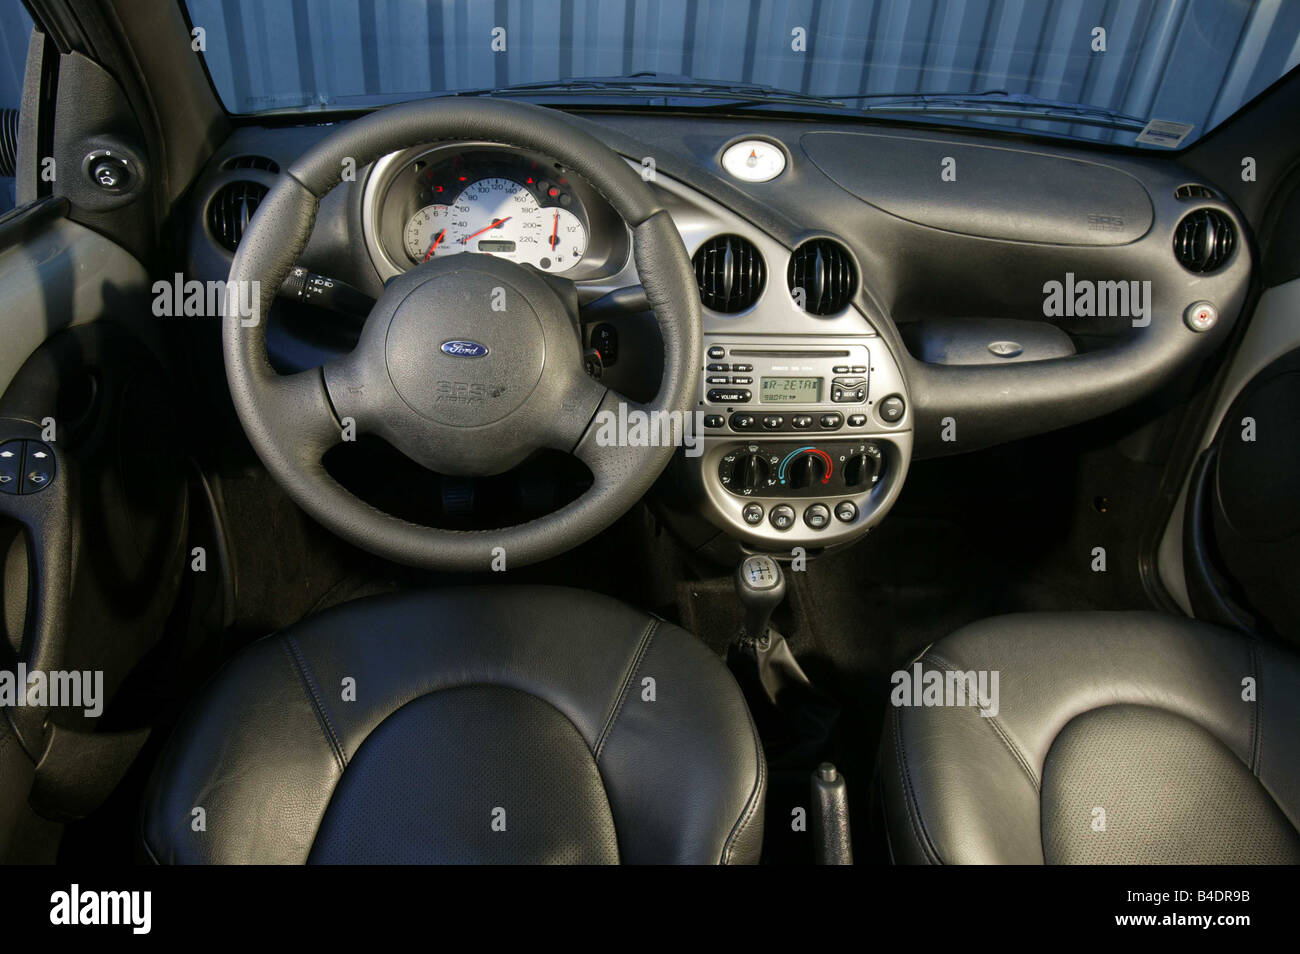 Auto, Ford Ka, Miniapprox.s, Bj. 2002-Silber, innere besichtigen,  Innenansicht, Cockpit, Technik/Zubehör, Zubehör Stockfotografie - Alamy